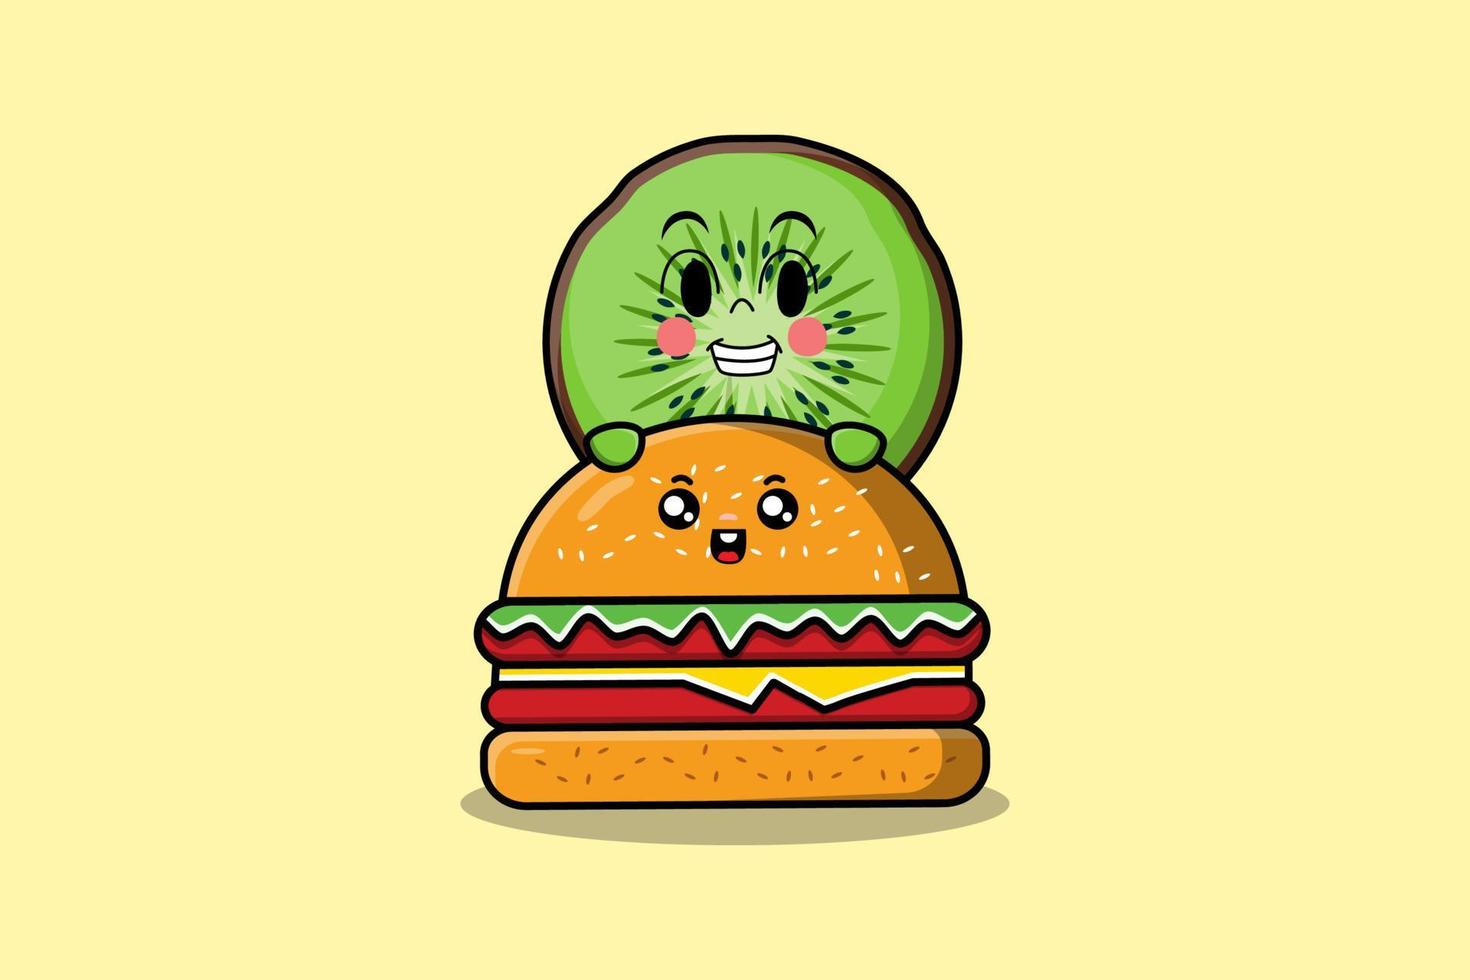 personagem de desenho animado de kiwi fofo escondido no hambúrguer vetor